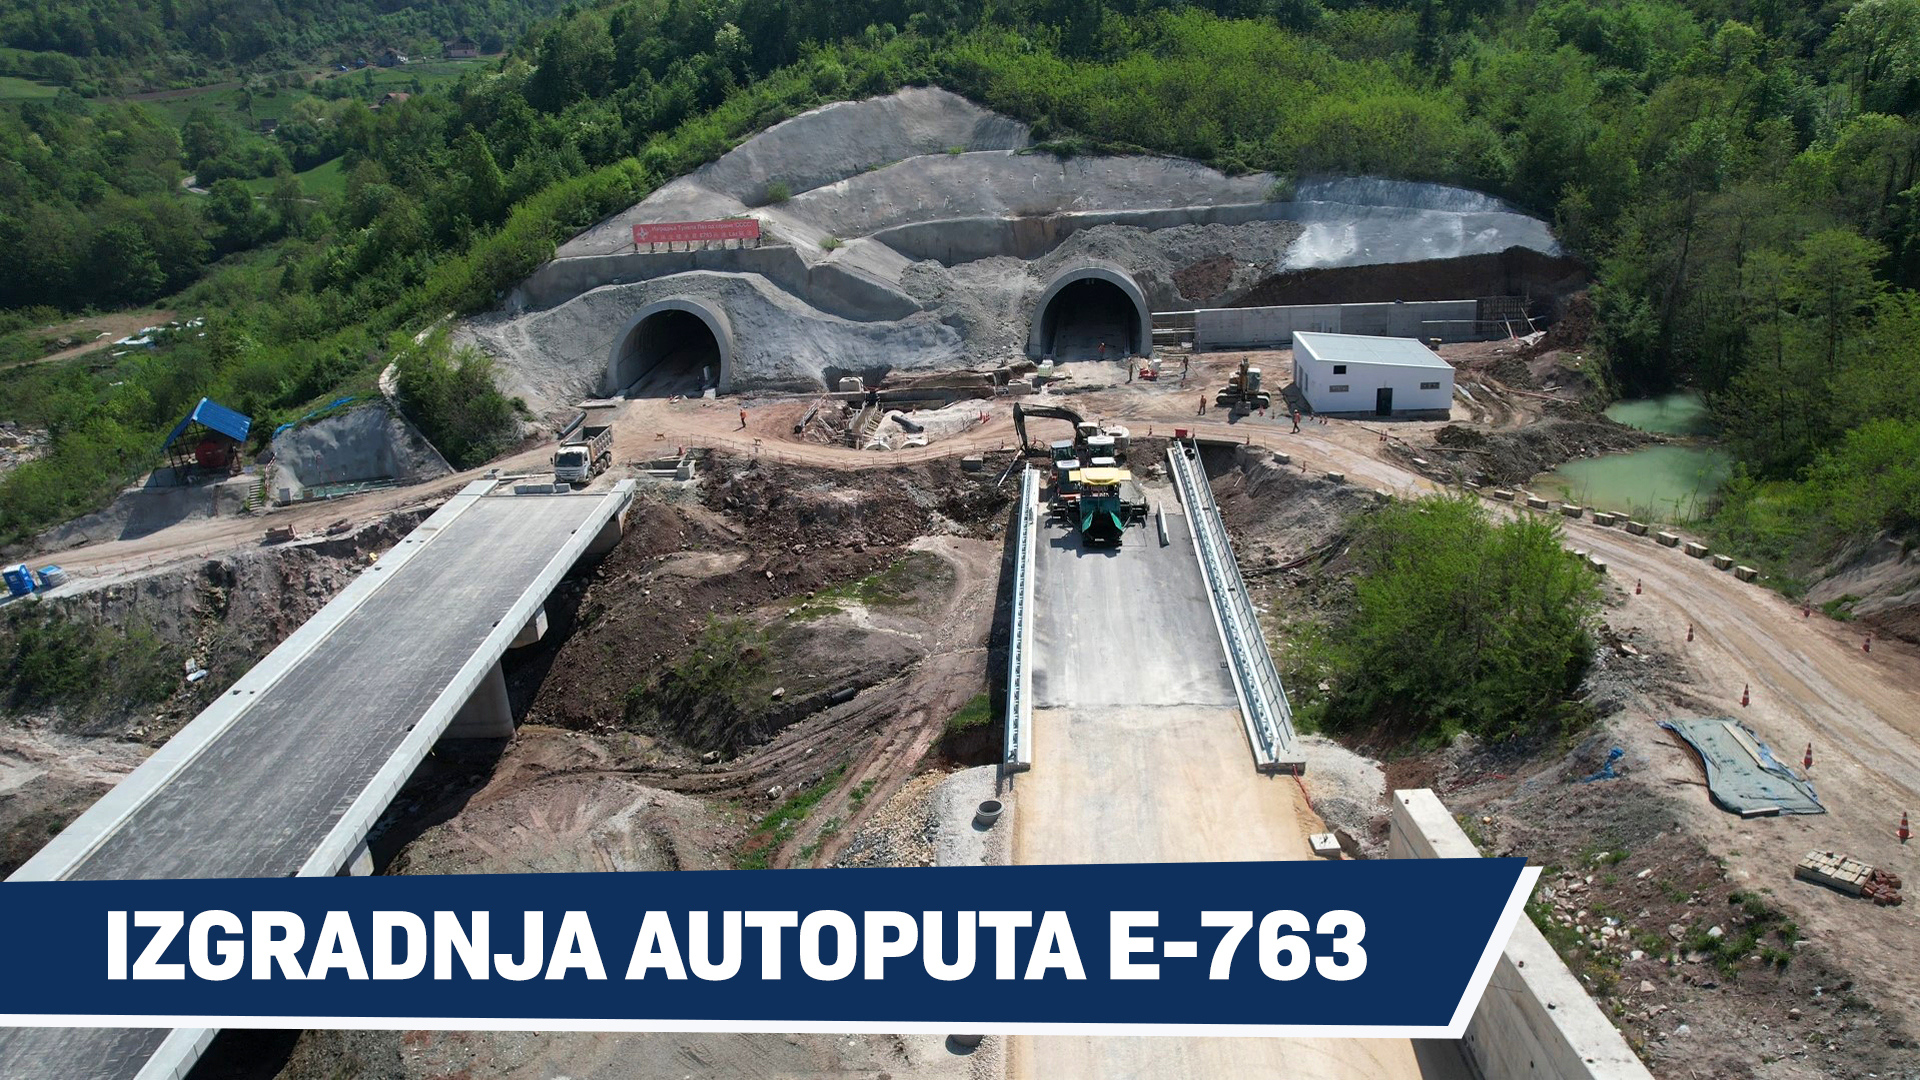 23.04.24. Construction of highway E 763, section Pakovraće - Požega